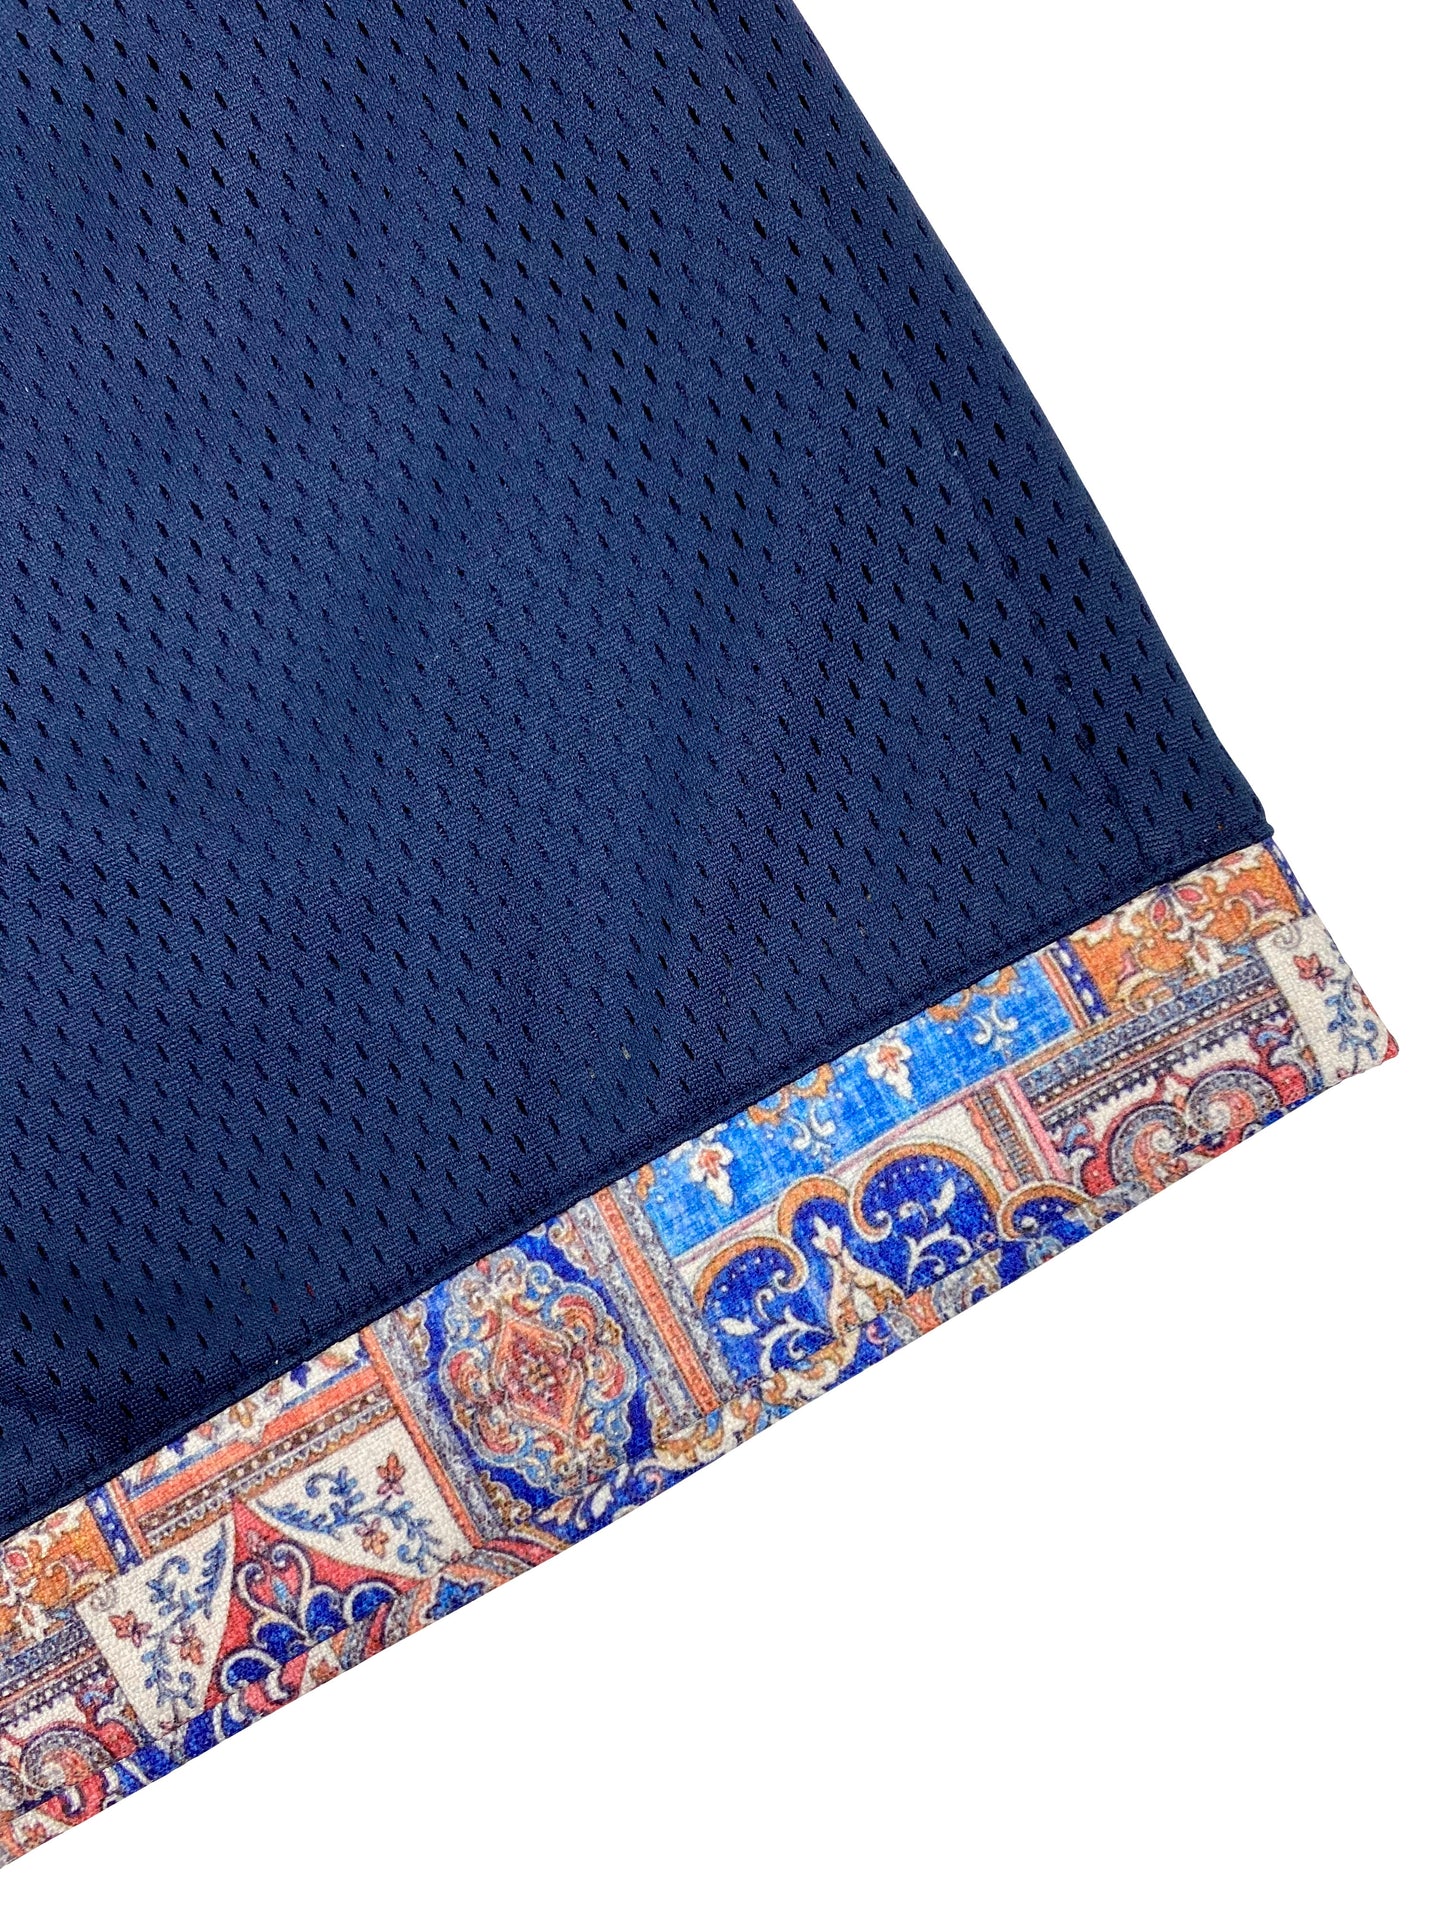 Bledla-Bled-Persian Shorts-Mesh Shorts-Mosaic Textile-Mosaic Bottoms-Mosaic Shorts-Basketball Shorts-Textile Shorts-Navy Mesh Short